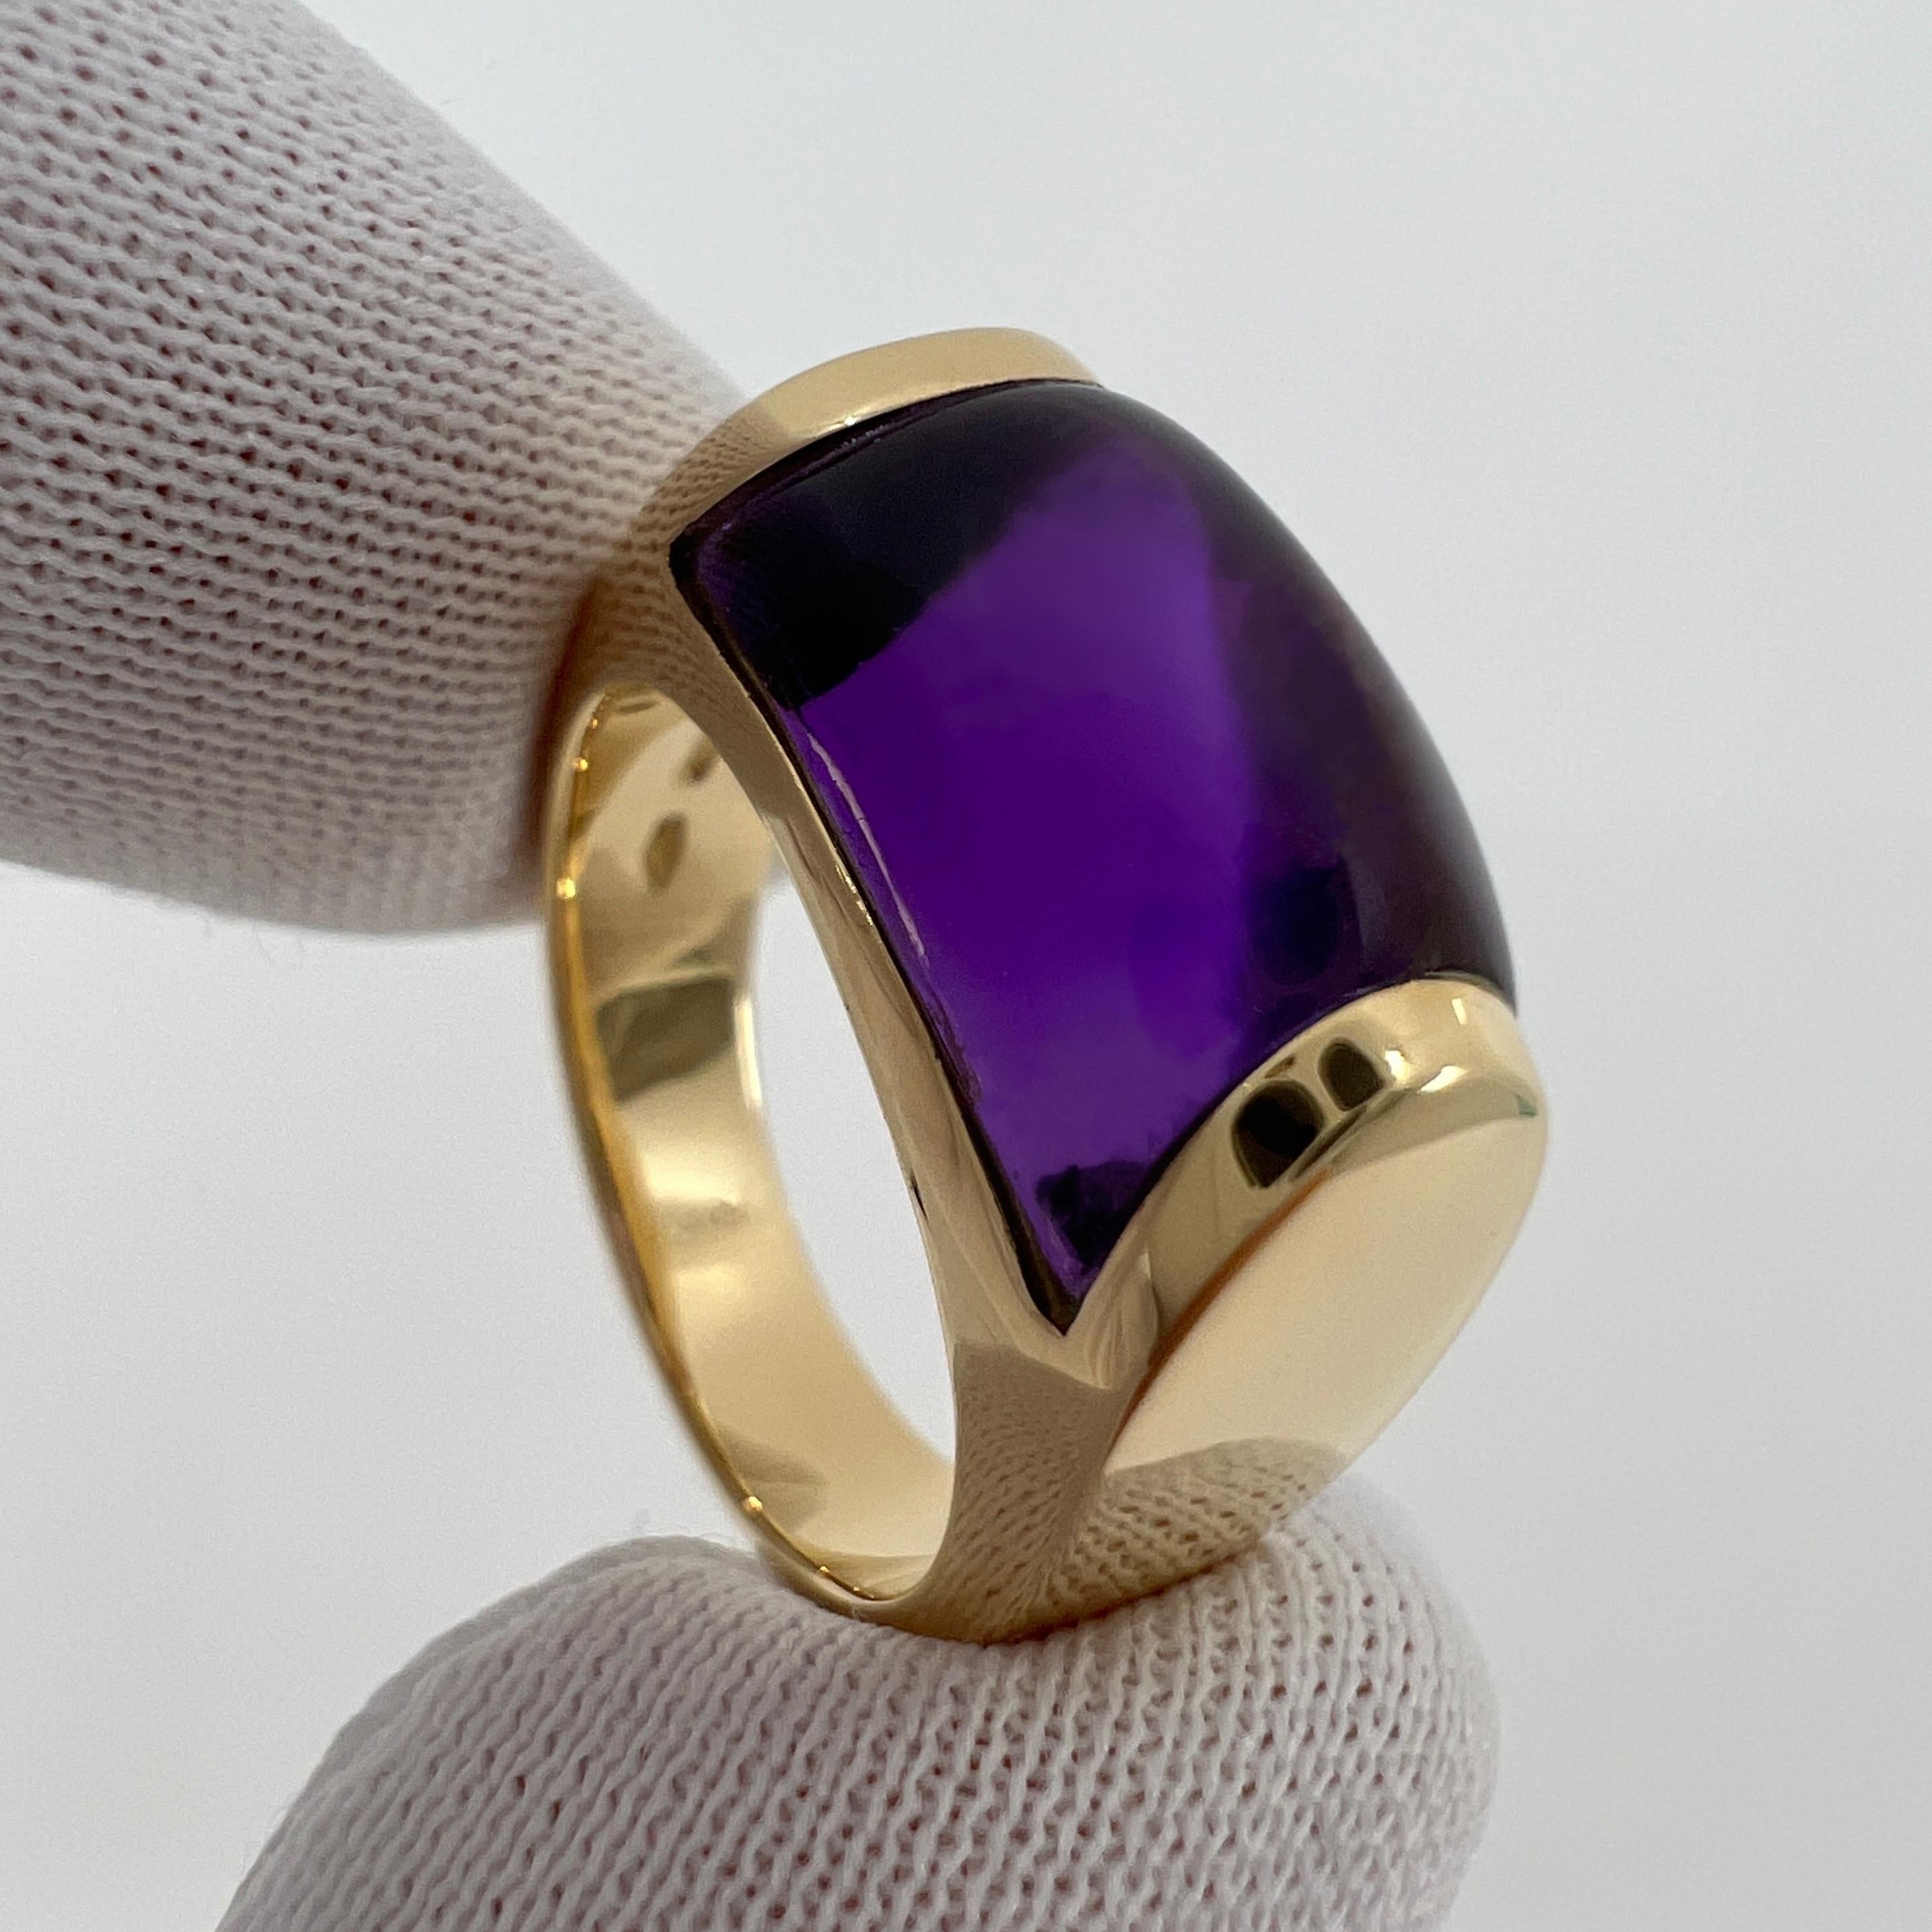 Rare Bvlgari Bulgari Tronchetto 18k Yellow Gold Purple Amethyst Ring with Box 4